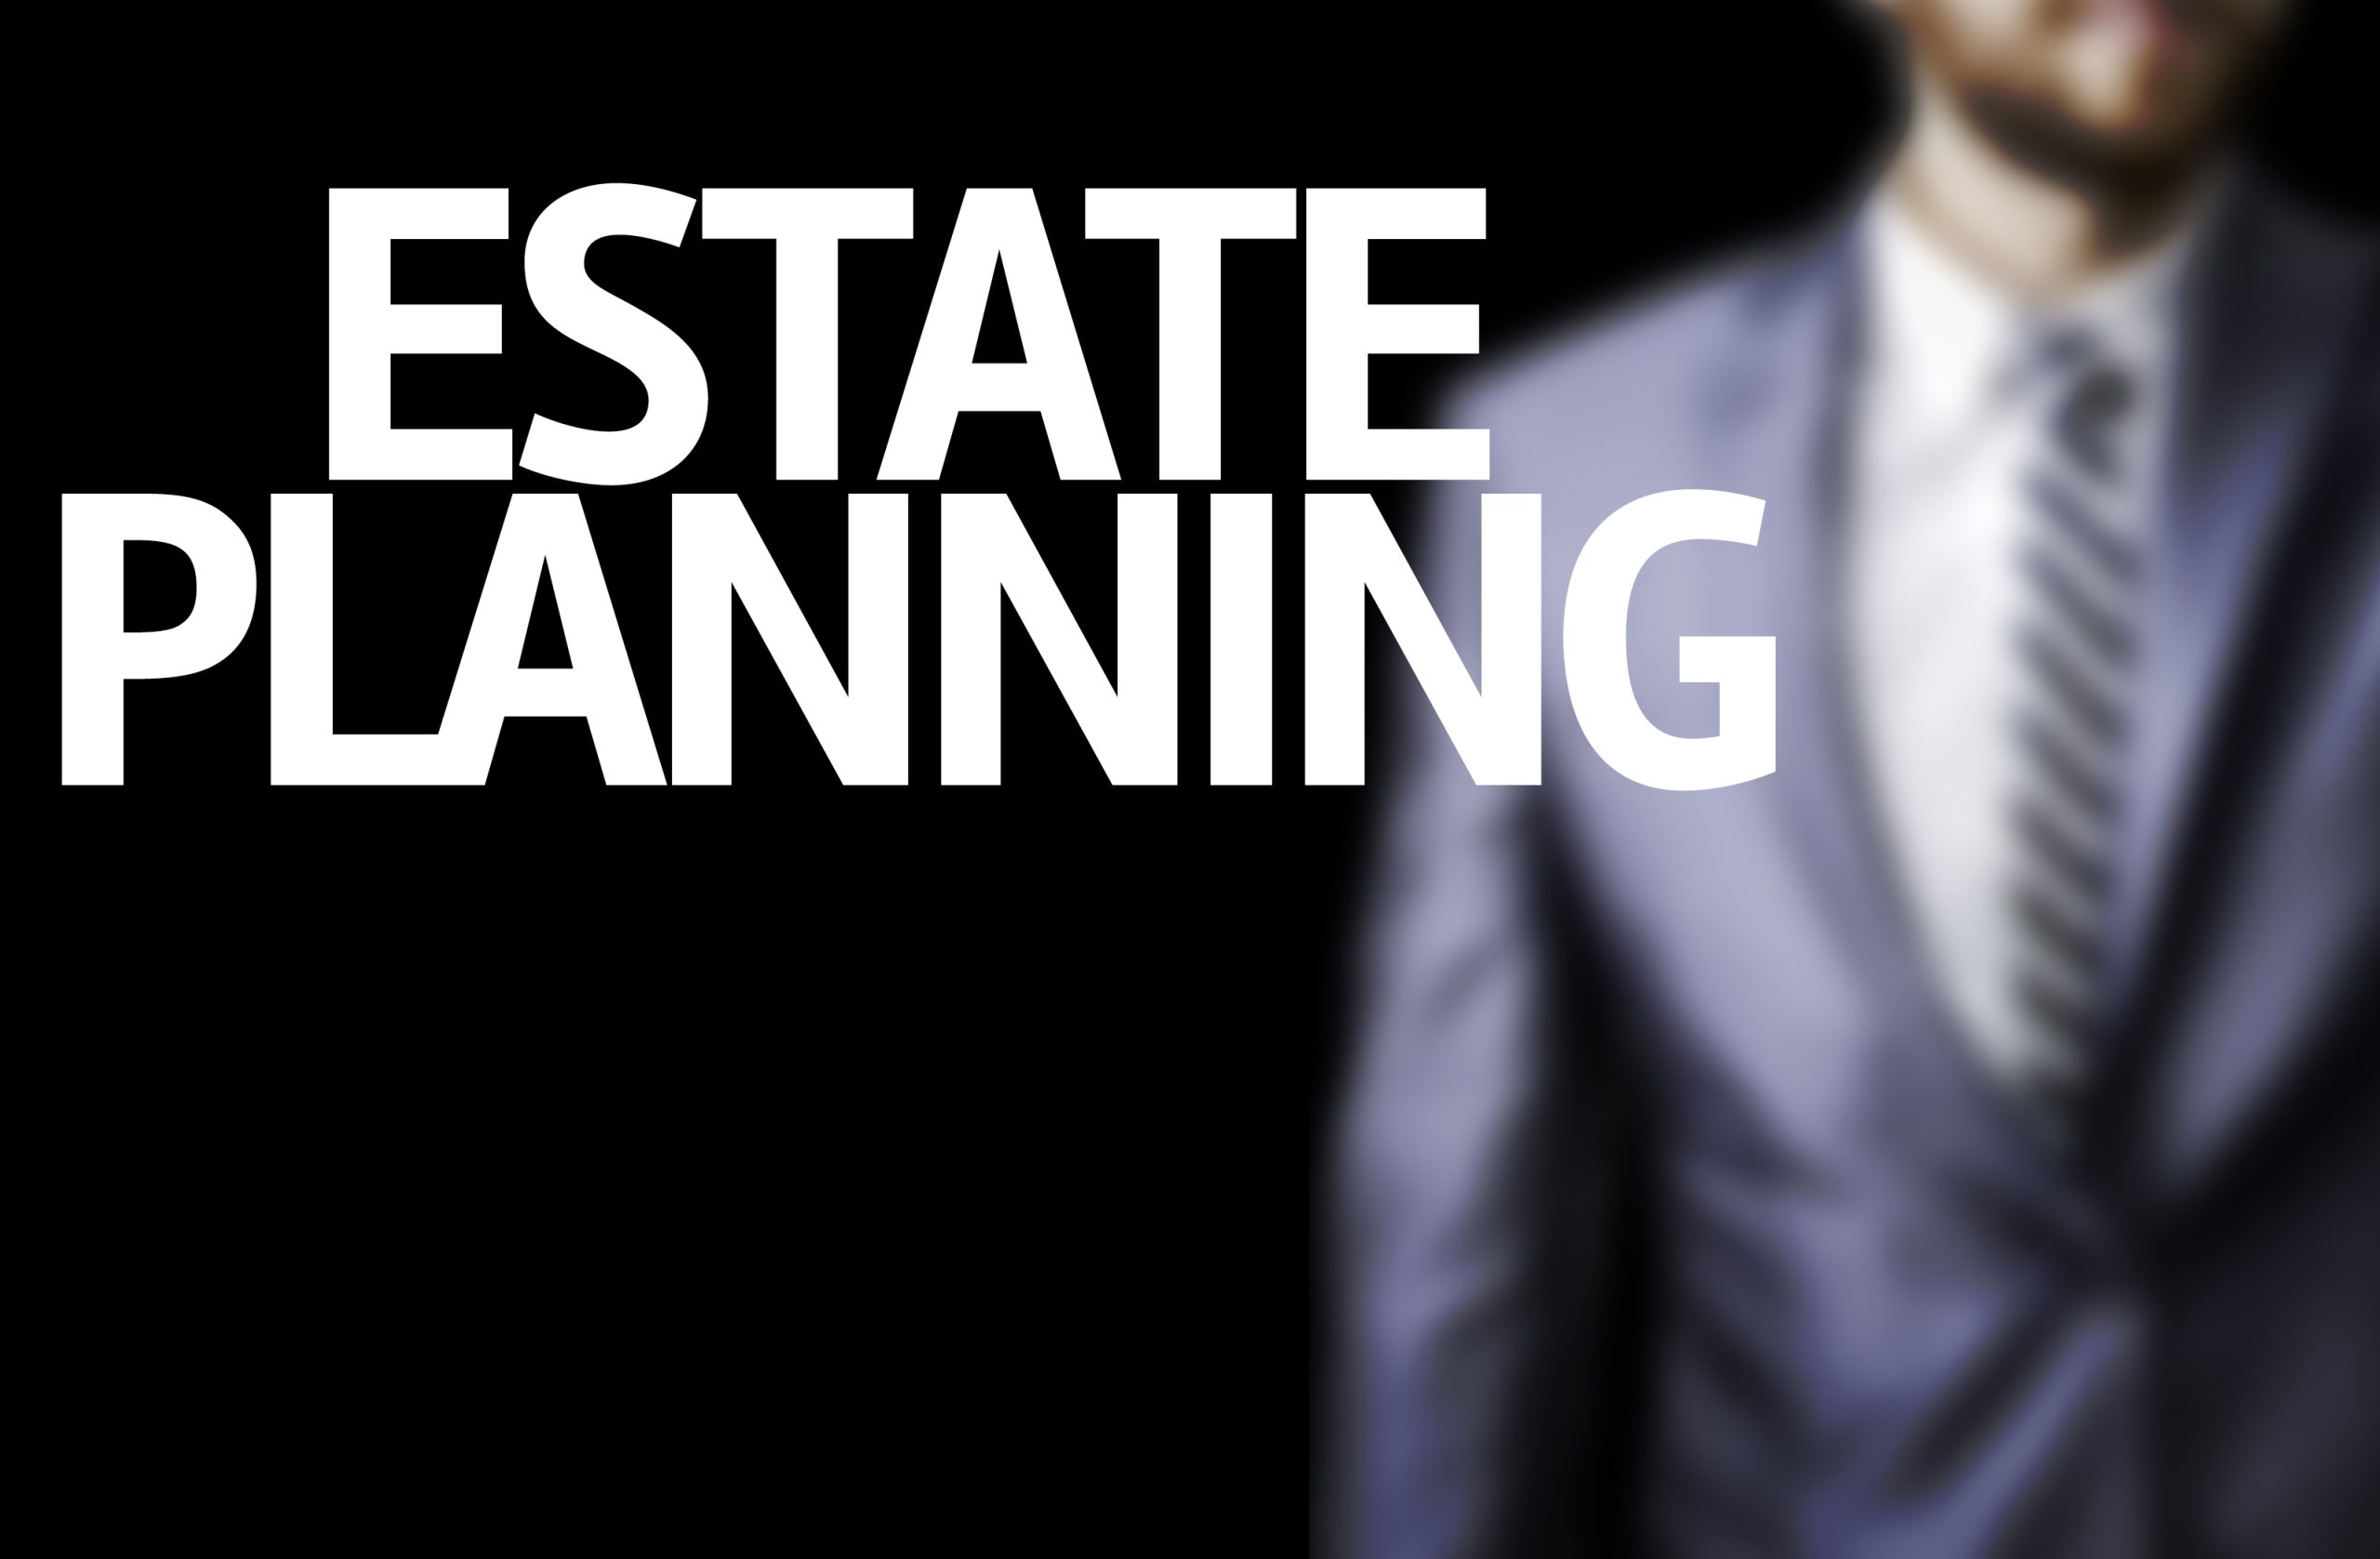 Estate planning attorney help